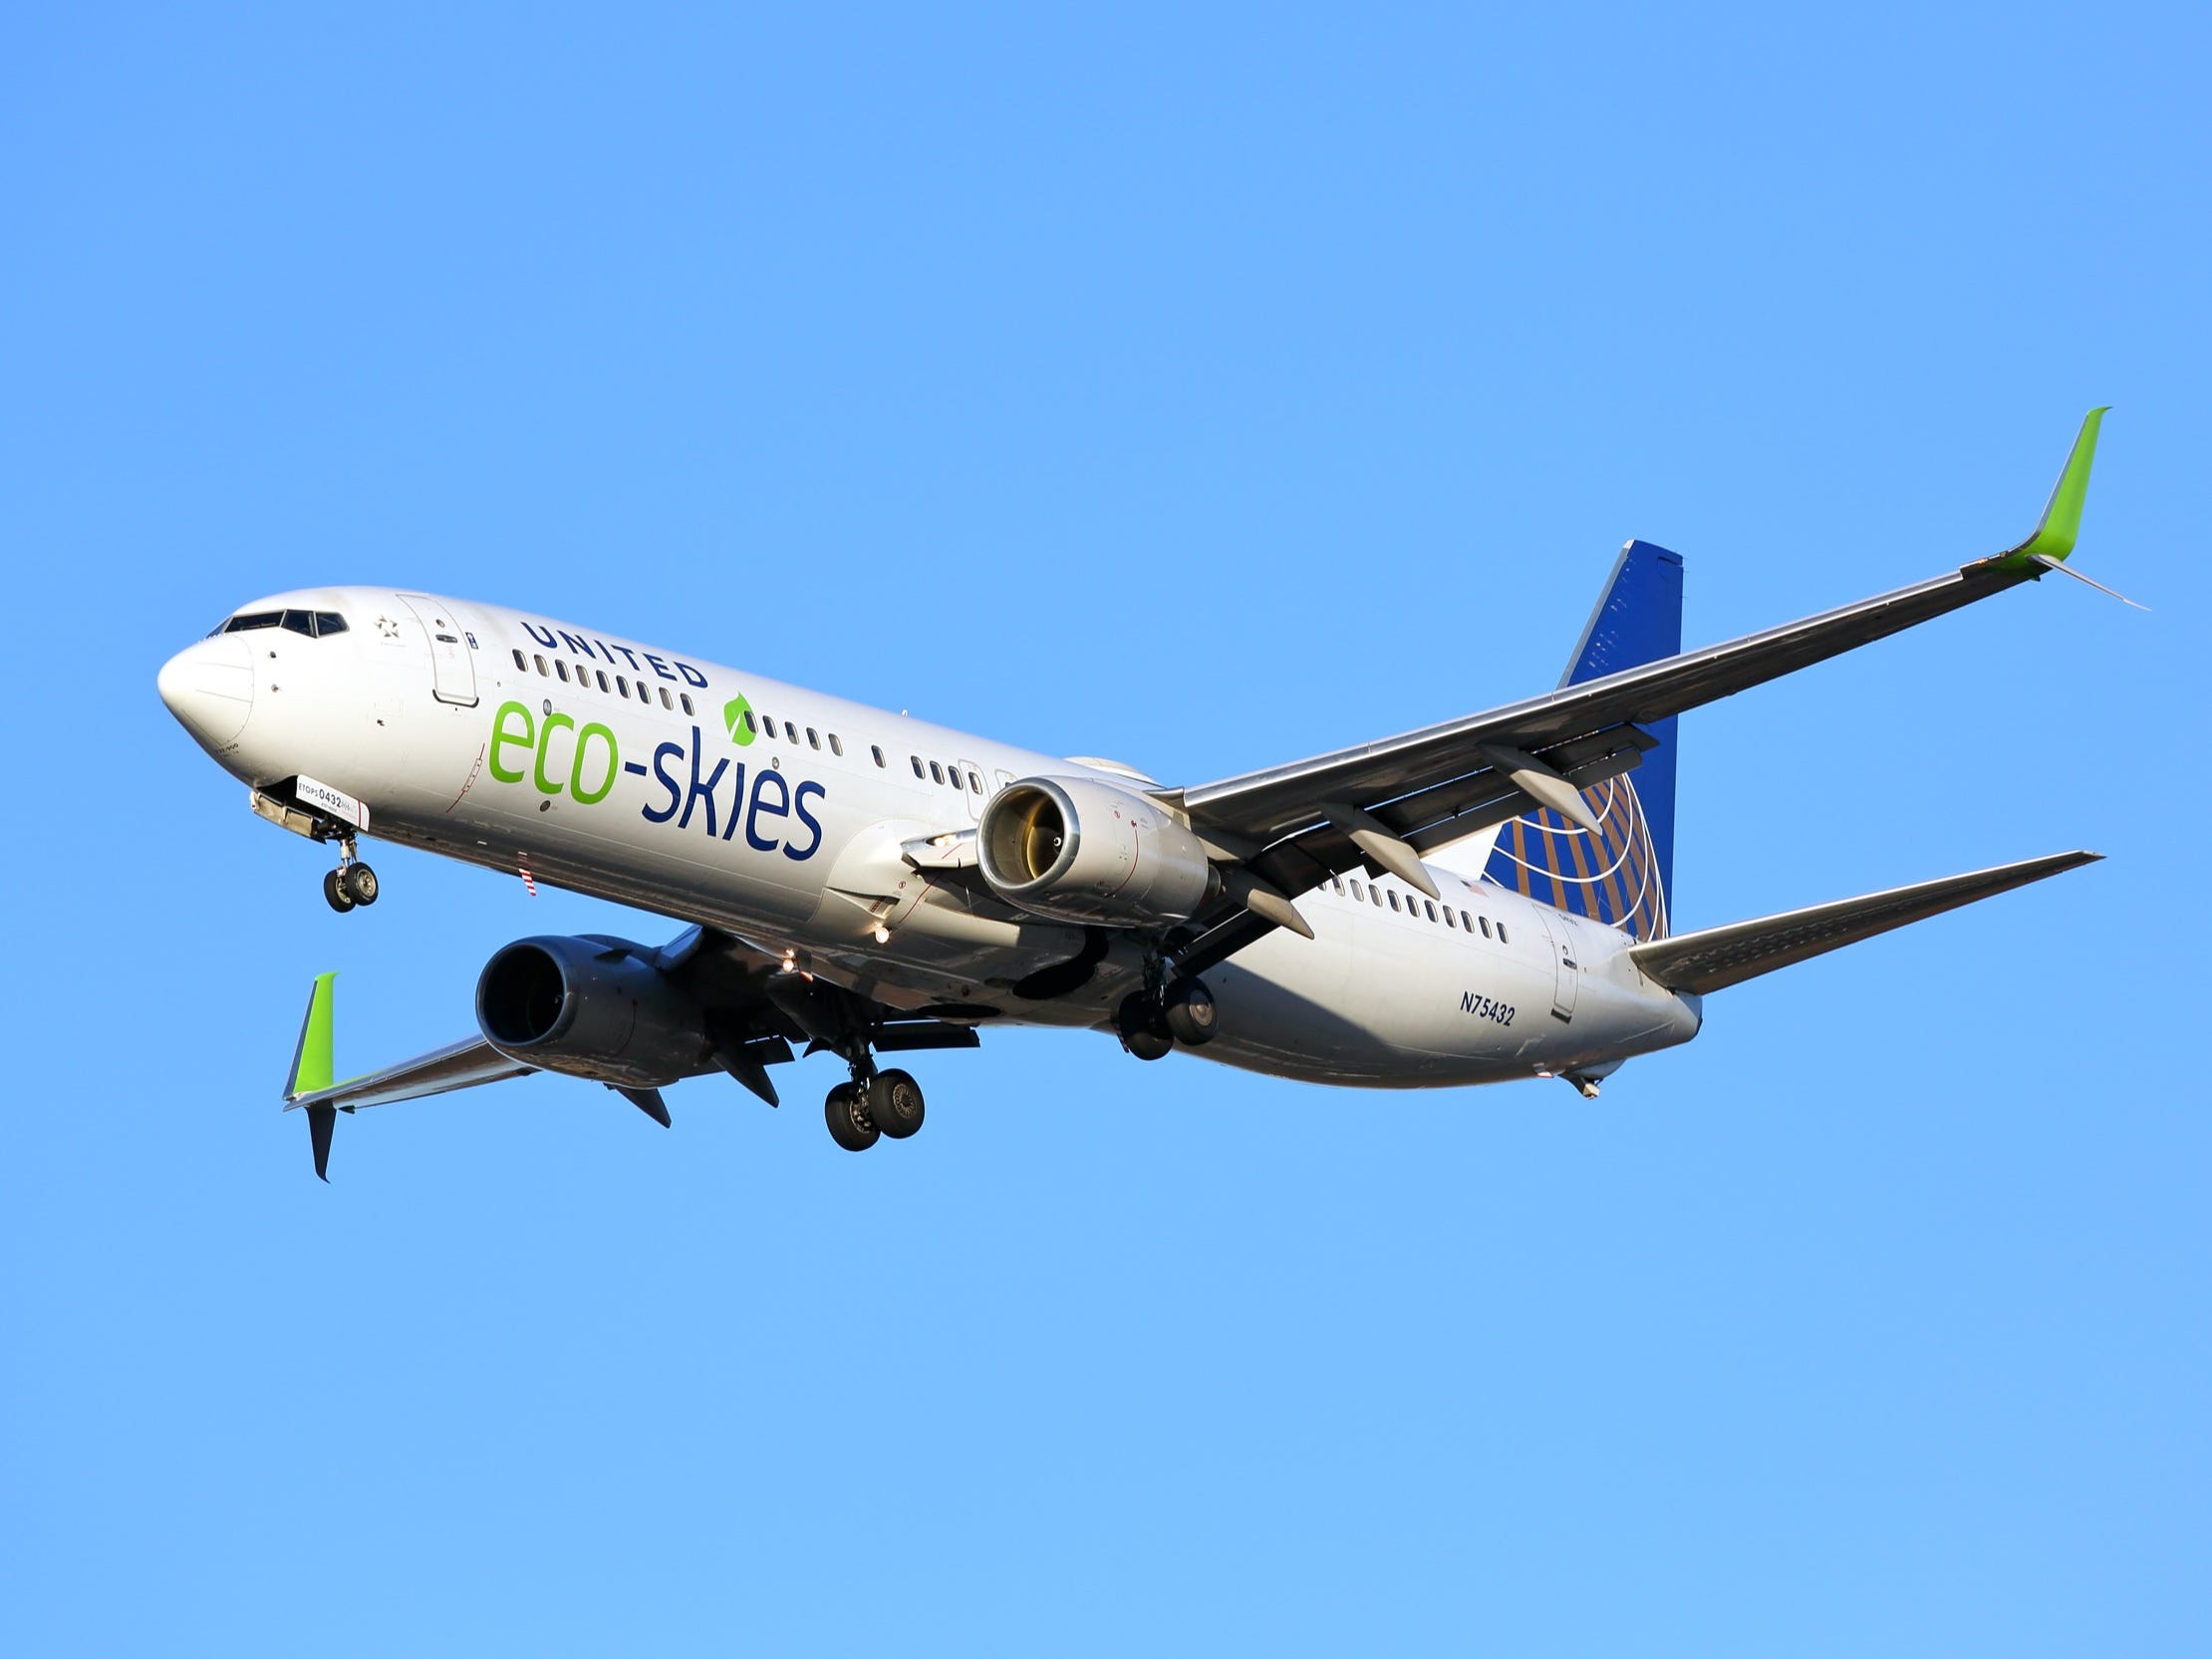 United Airlines Eco-Skies Boeing 737